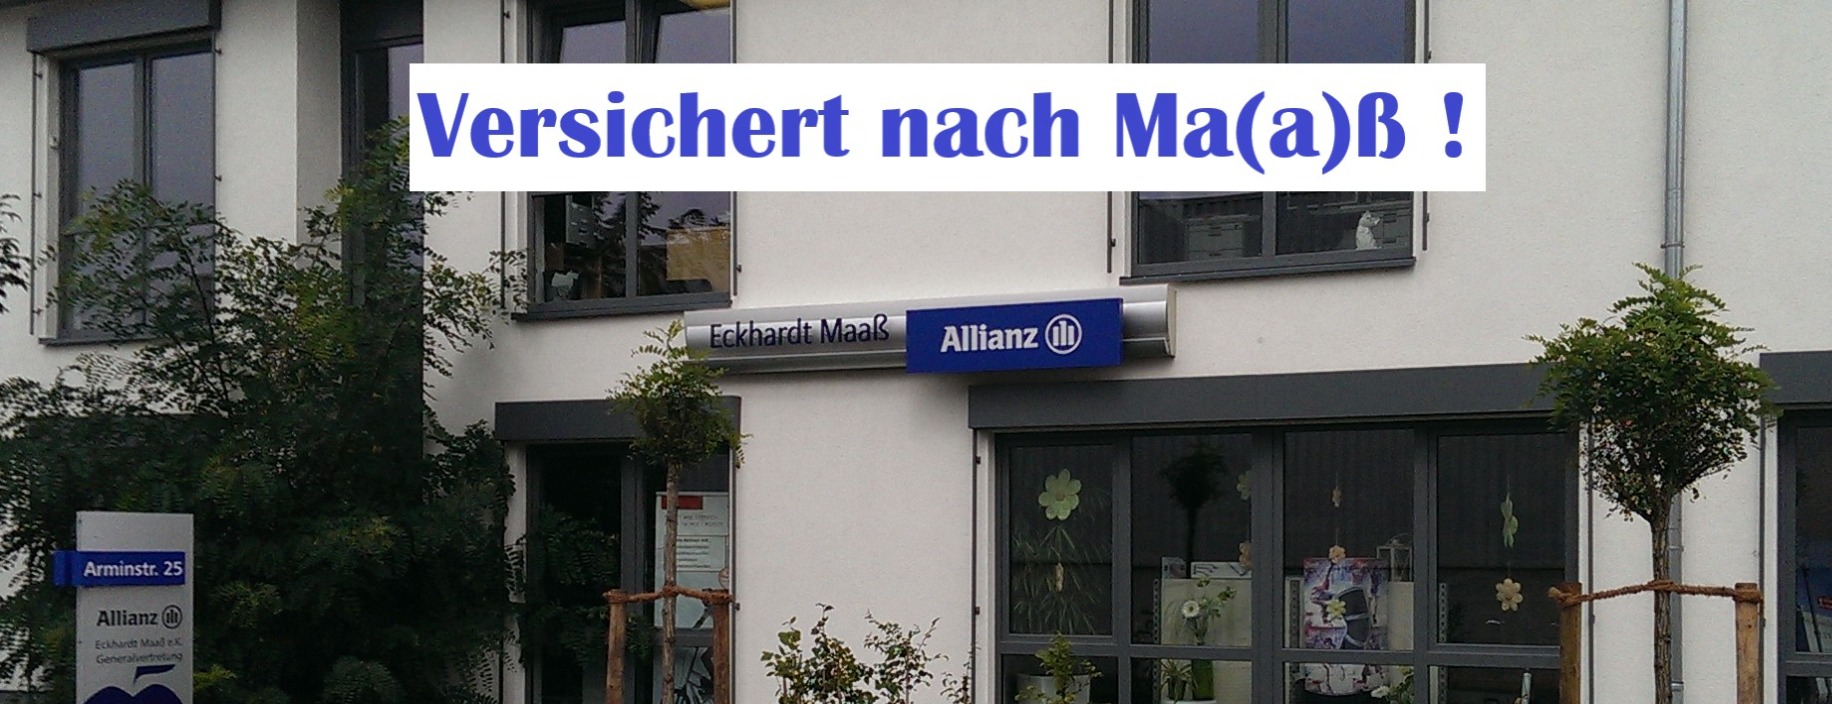 Allianz Versicherung Eckhardt Maaß e.K. Detmold - Agenturfront